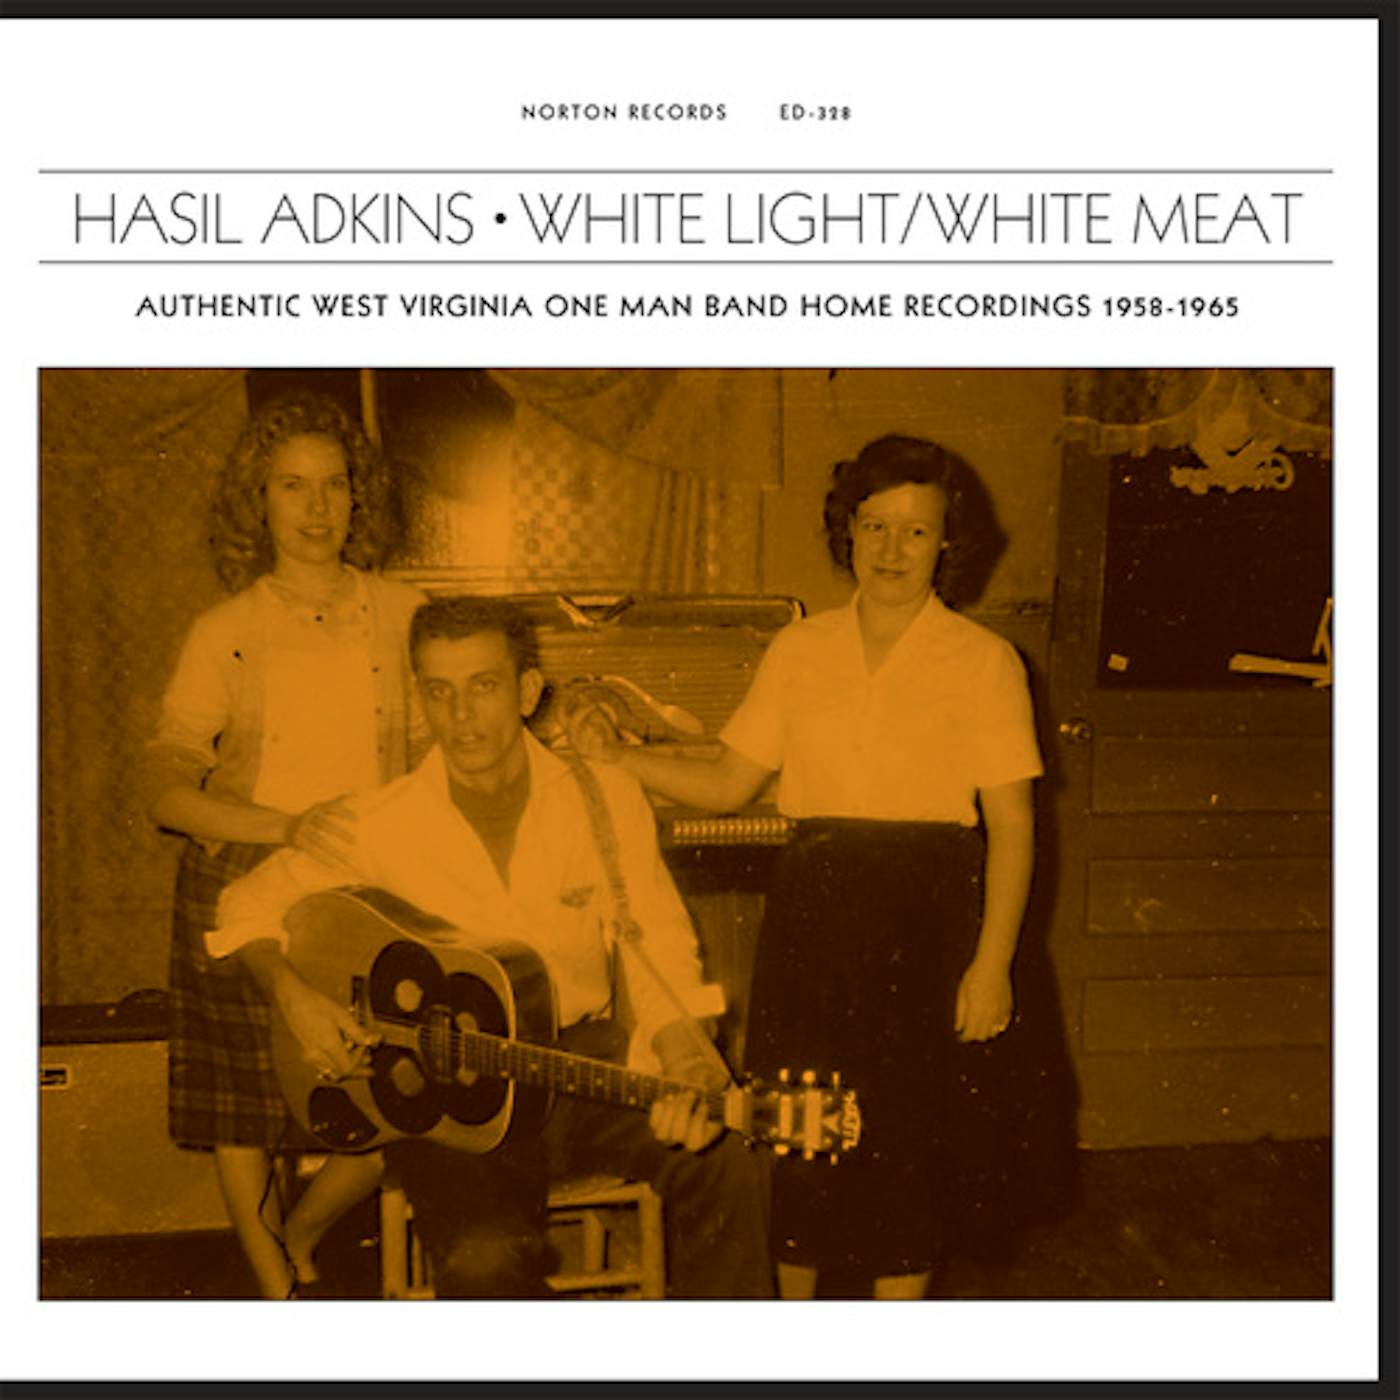 WHITE LIGHT/WHITE MEAT / VARIOUS Vinyl Record